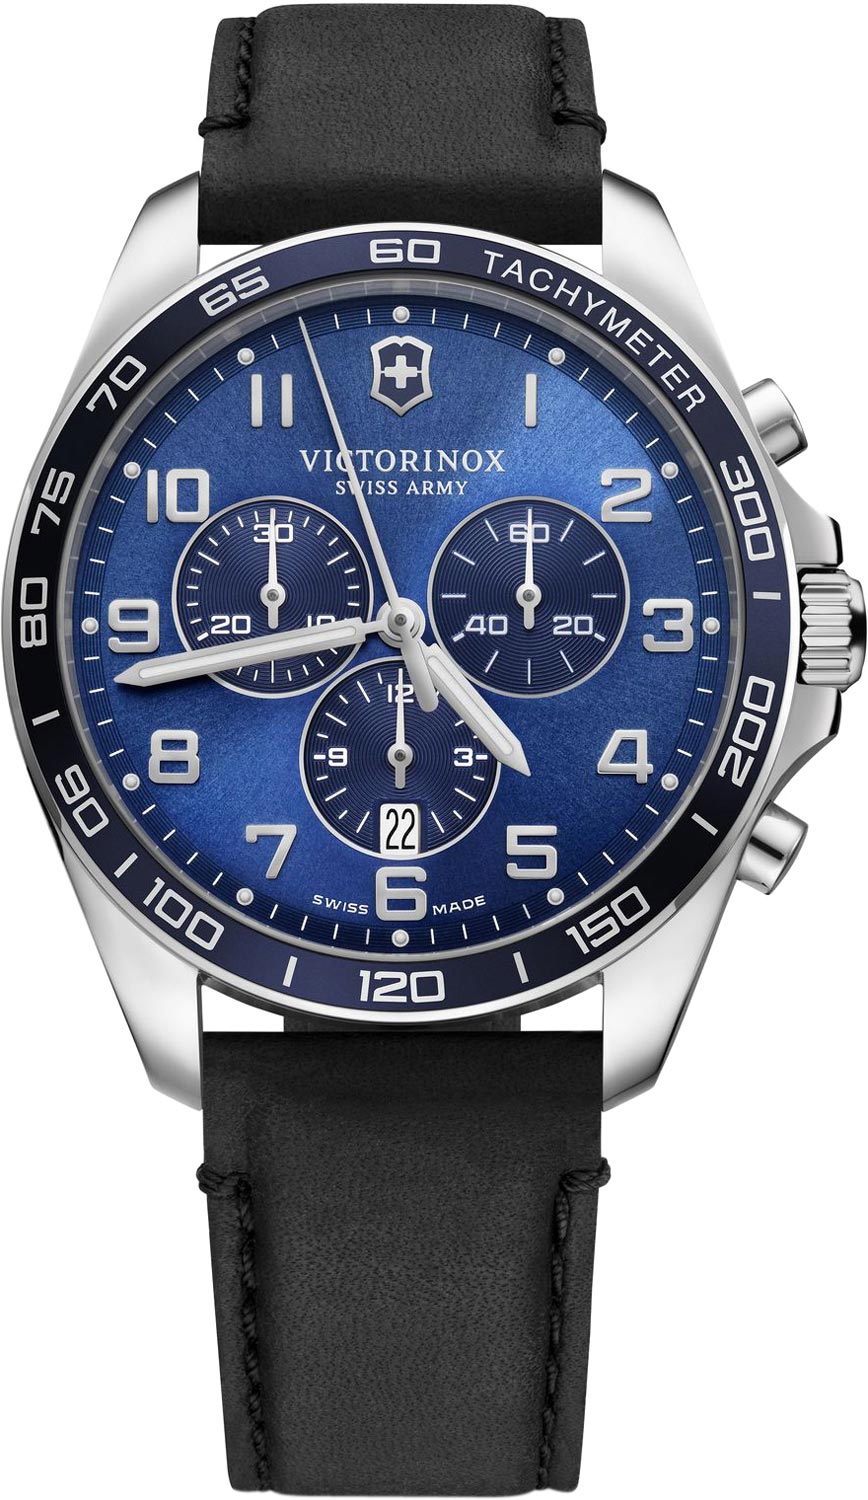 Швейцарские наручные часы Victorinox 241929 с хронографом